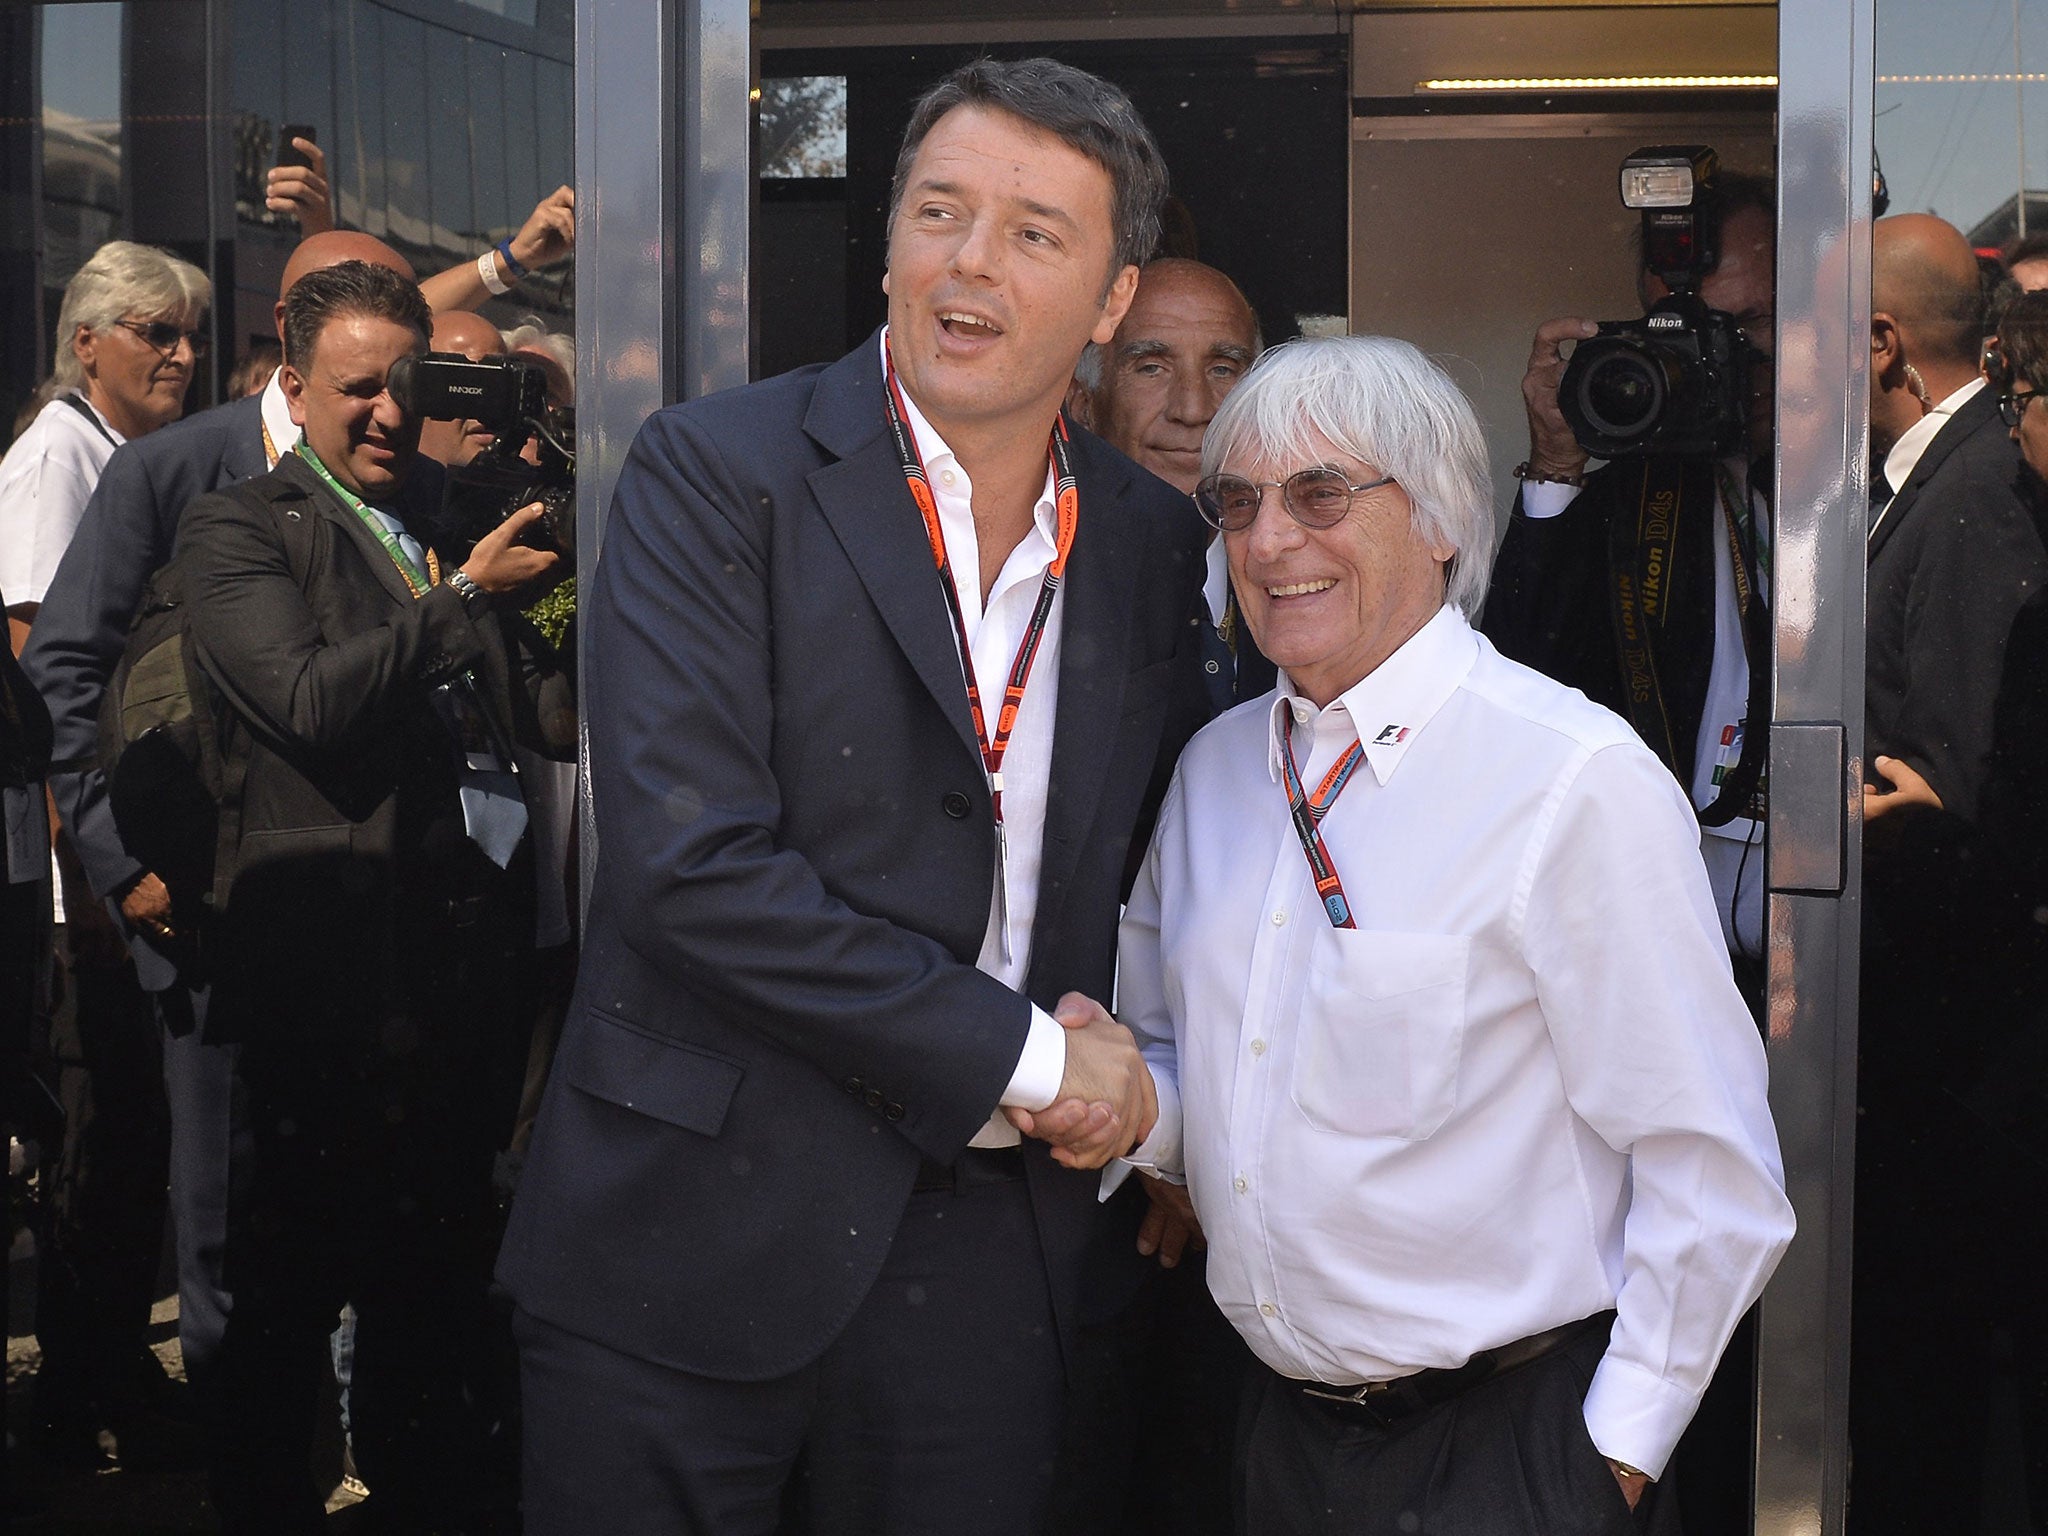 Bernie Ecclestone (right) with Italian Prime Minister Matteo Renzi